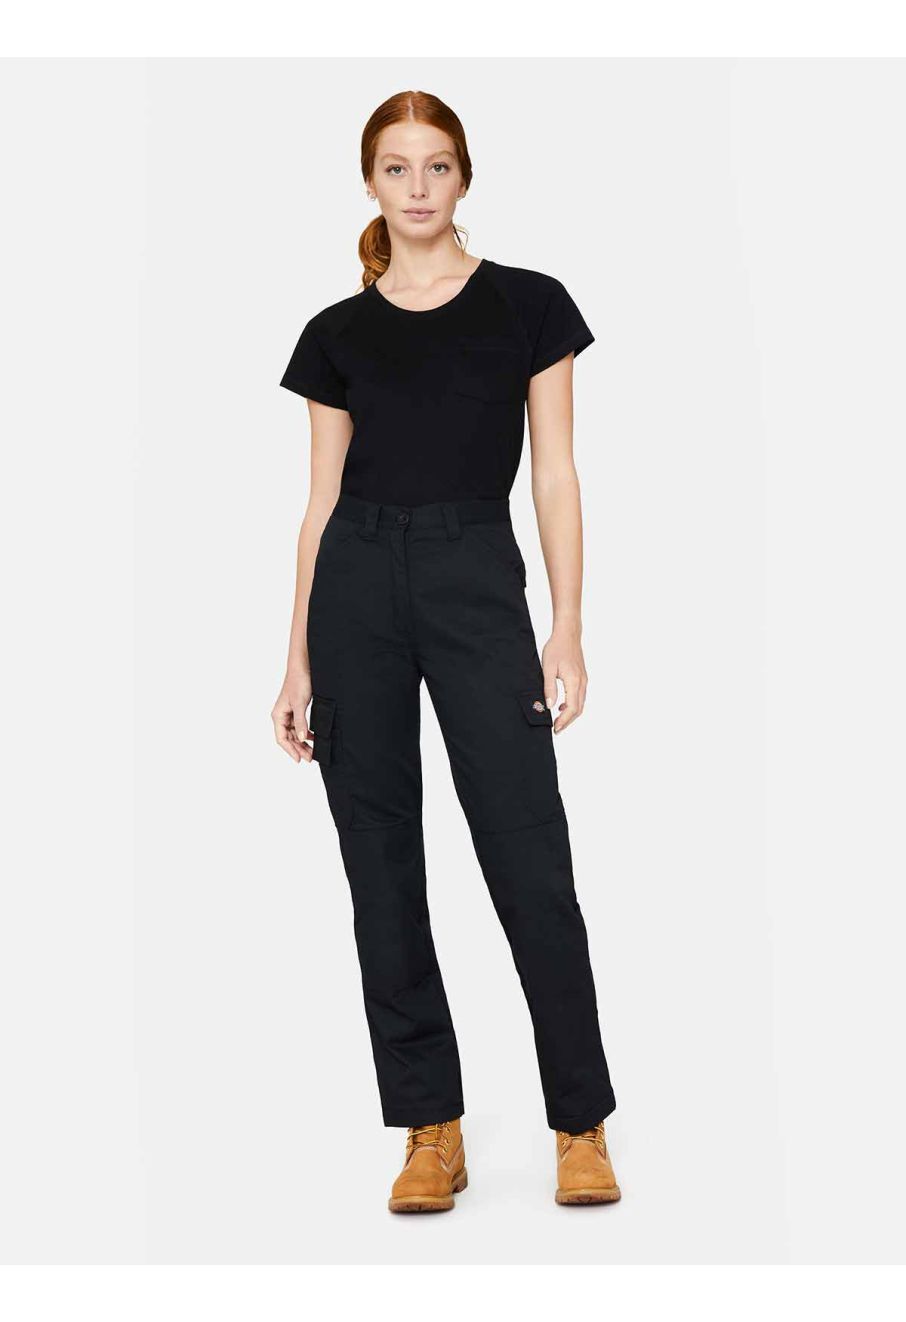 Dickies Black Slim Fit Twill Pants Women's Size 18L – MSU Surplus Store